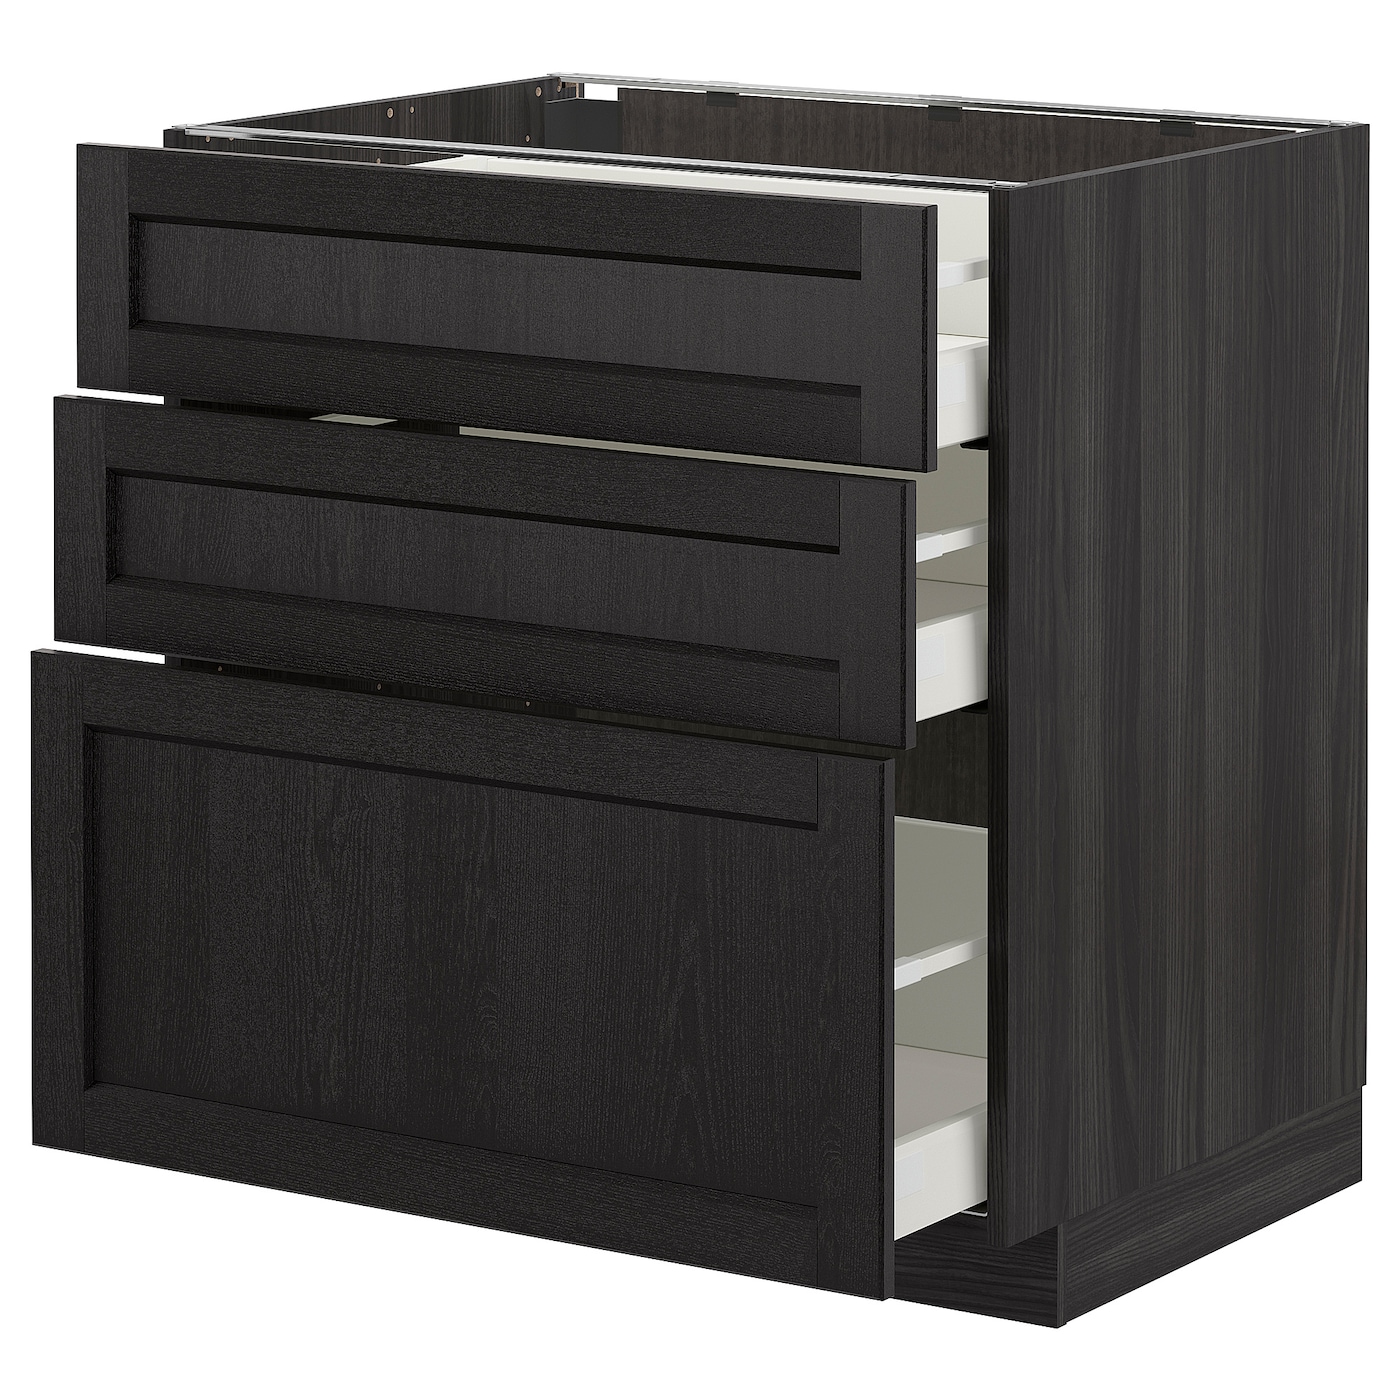 Напольный кухонный шкаф  - IKEA METOD MAXIMERA, 88x62x80см, черный, МЕТОД МАКСИМЕРА ИКЕА